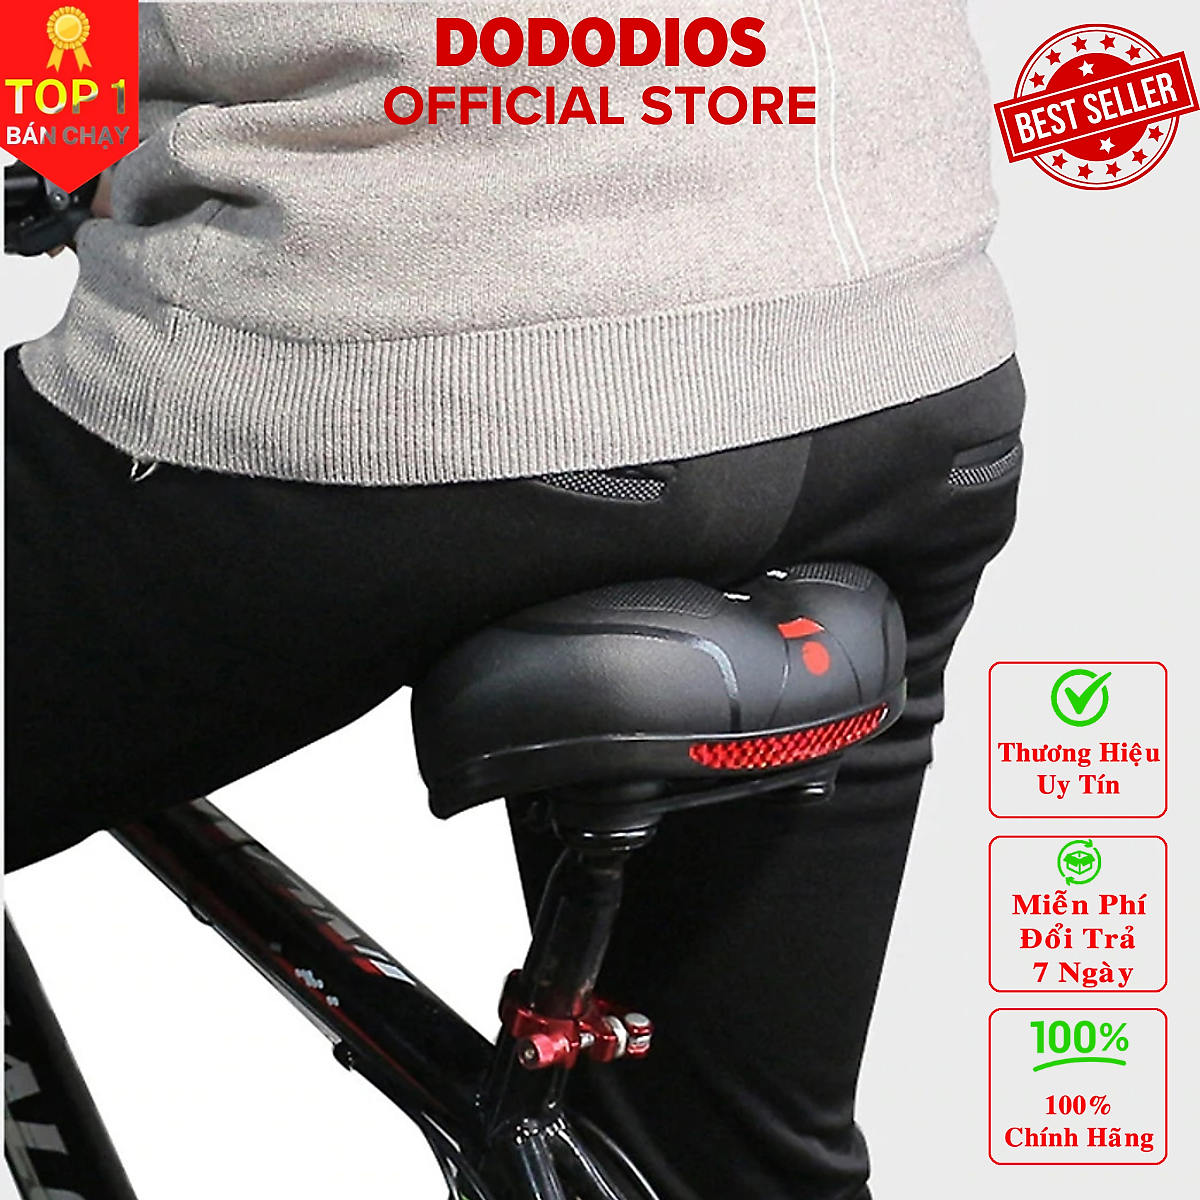 [TẶNG Dầu Tra Xích] Yên xe đạp địa hình thế hệ mới dododios chống sốc tuyệt đối, êm ái với đệm mút cực đỉnh, thoát khí